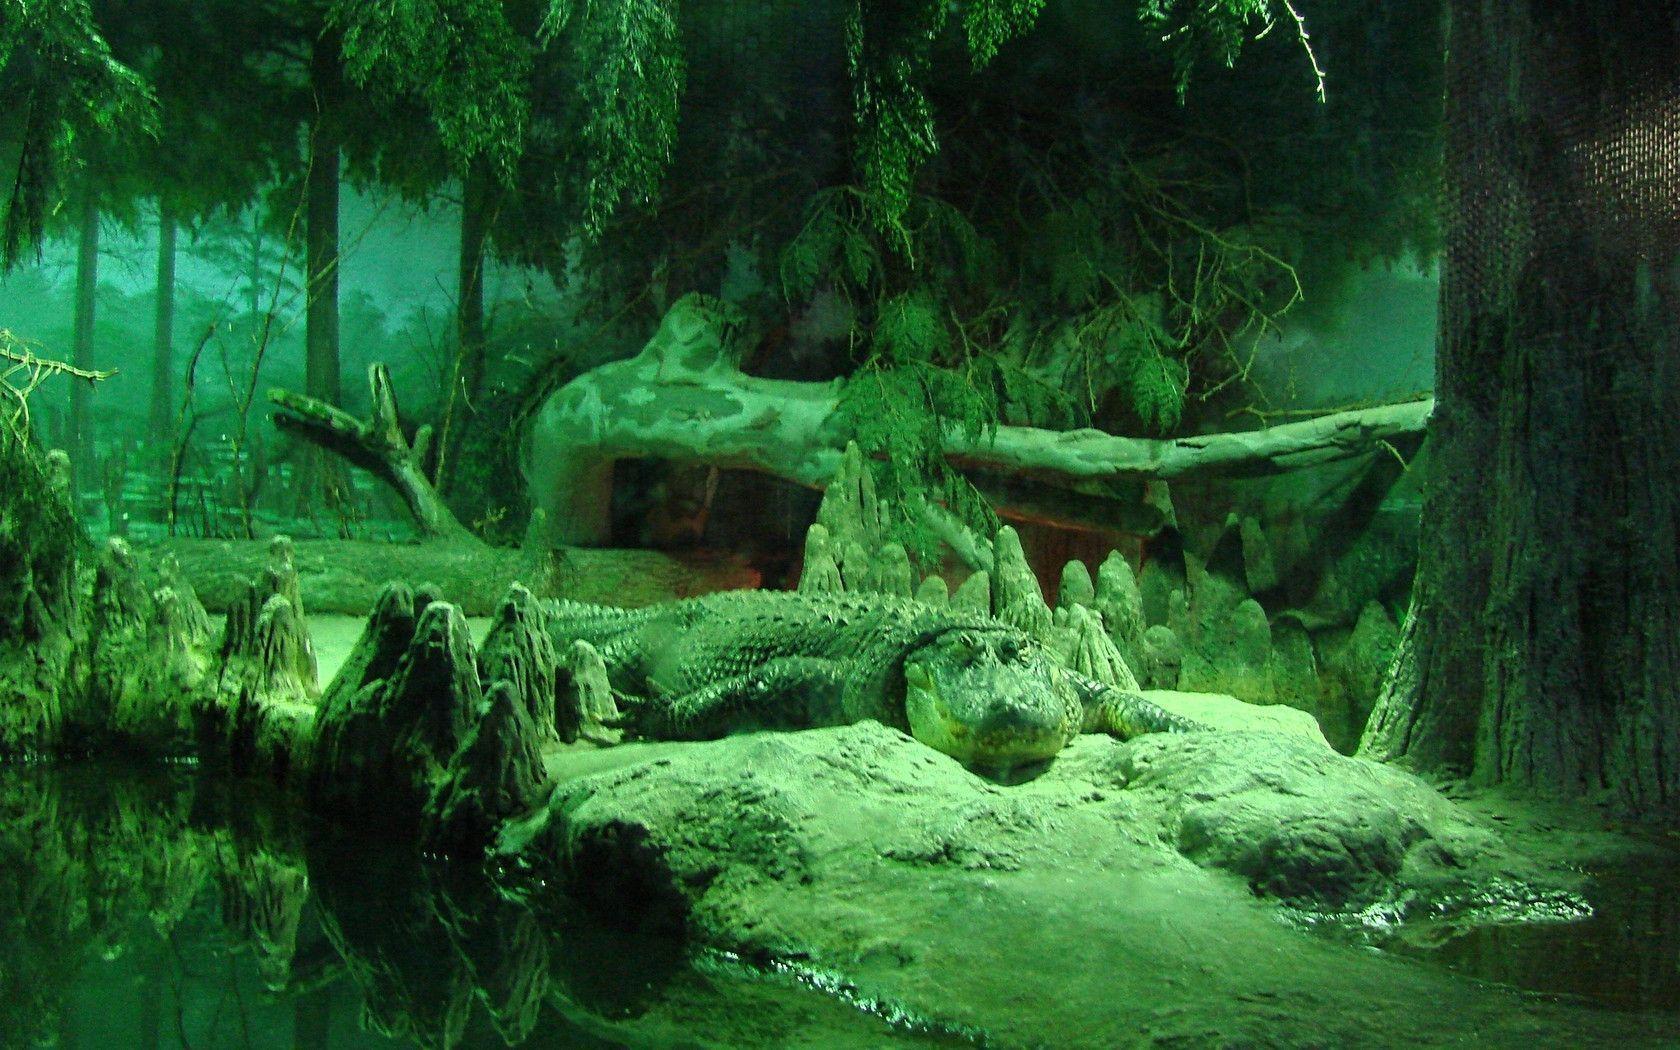 Alligator Wallpaper. Piccry.com: Picture Idea Gallery